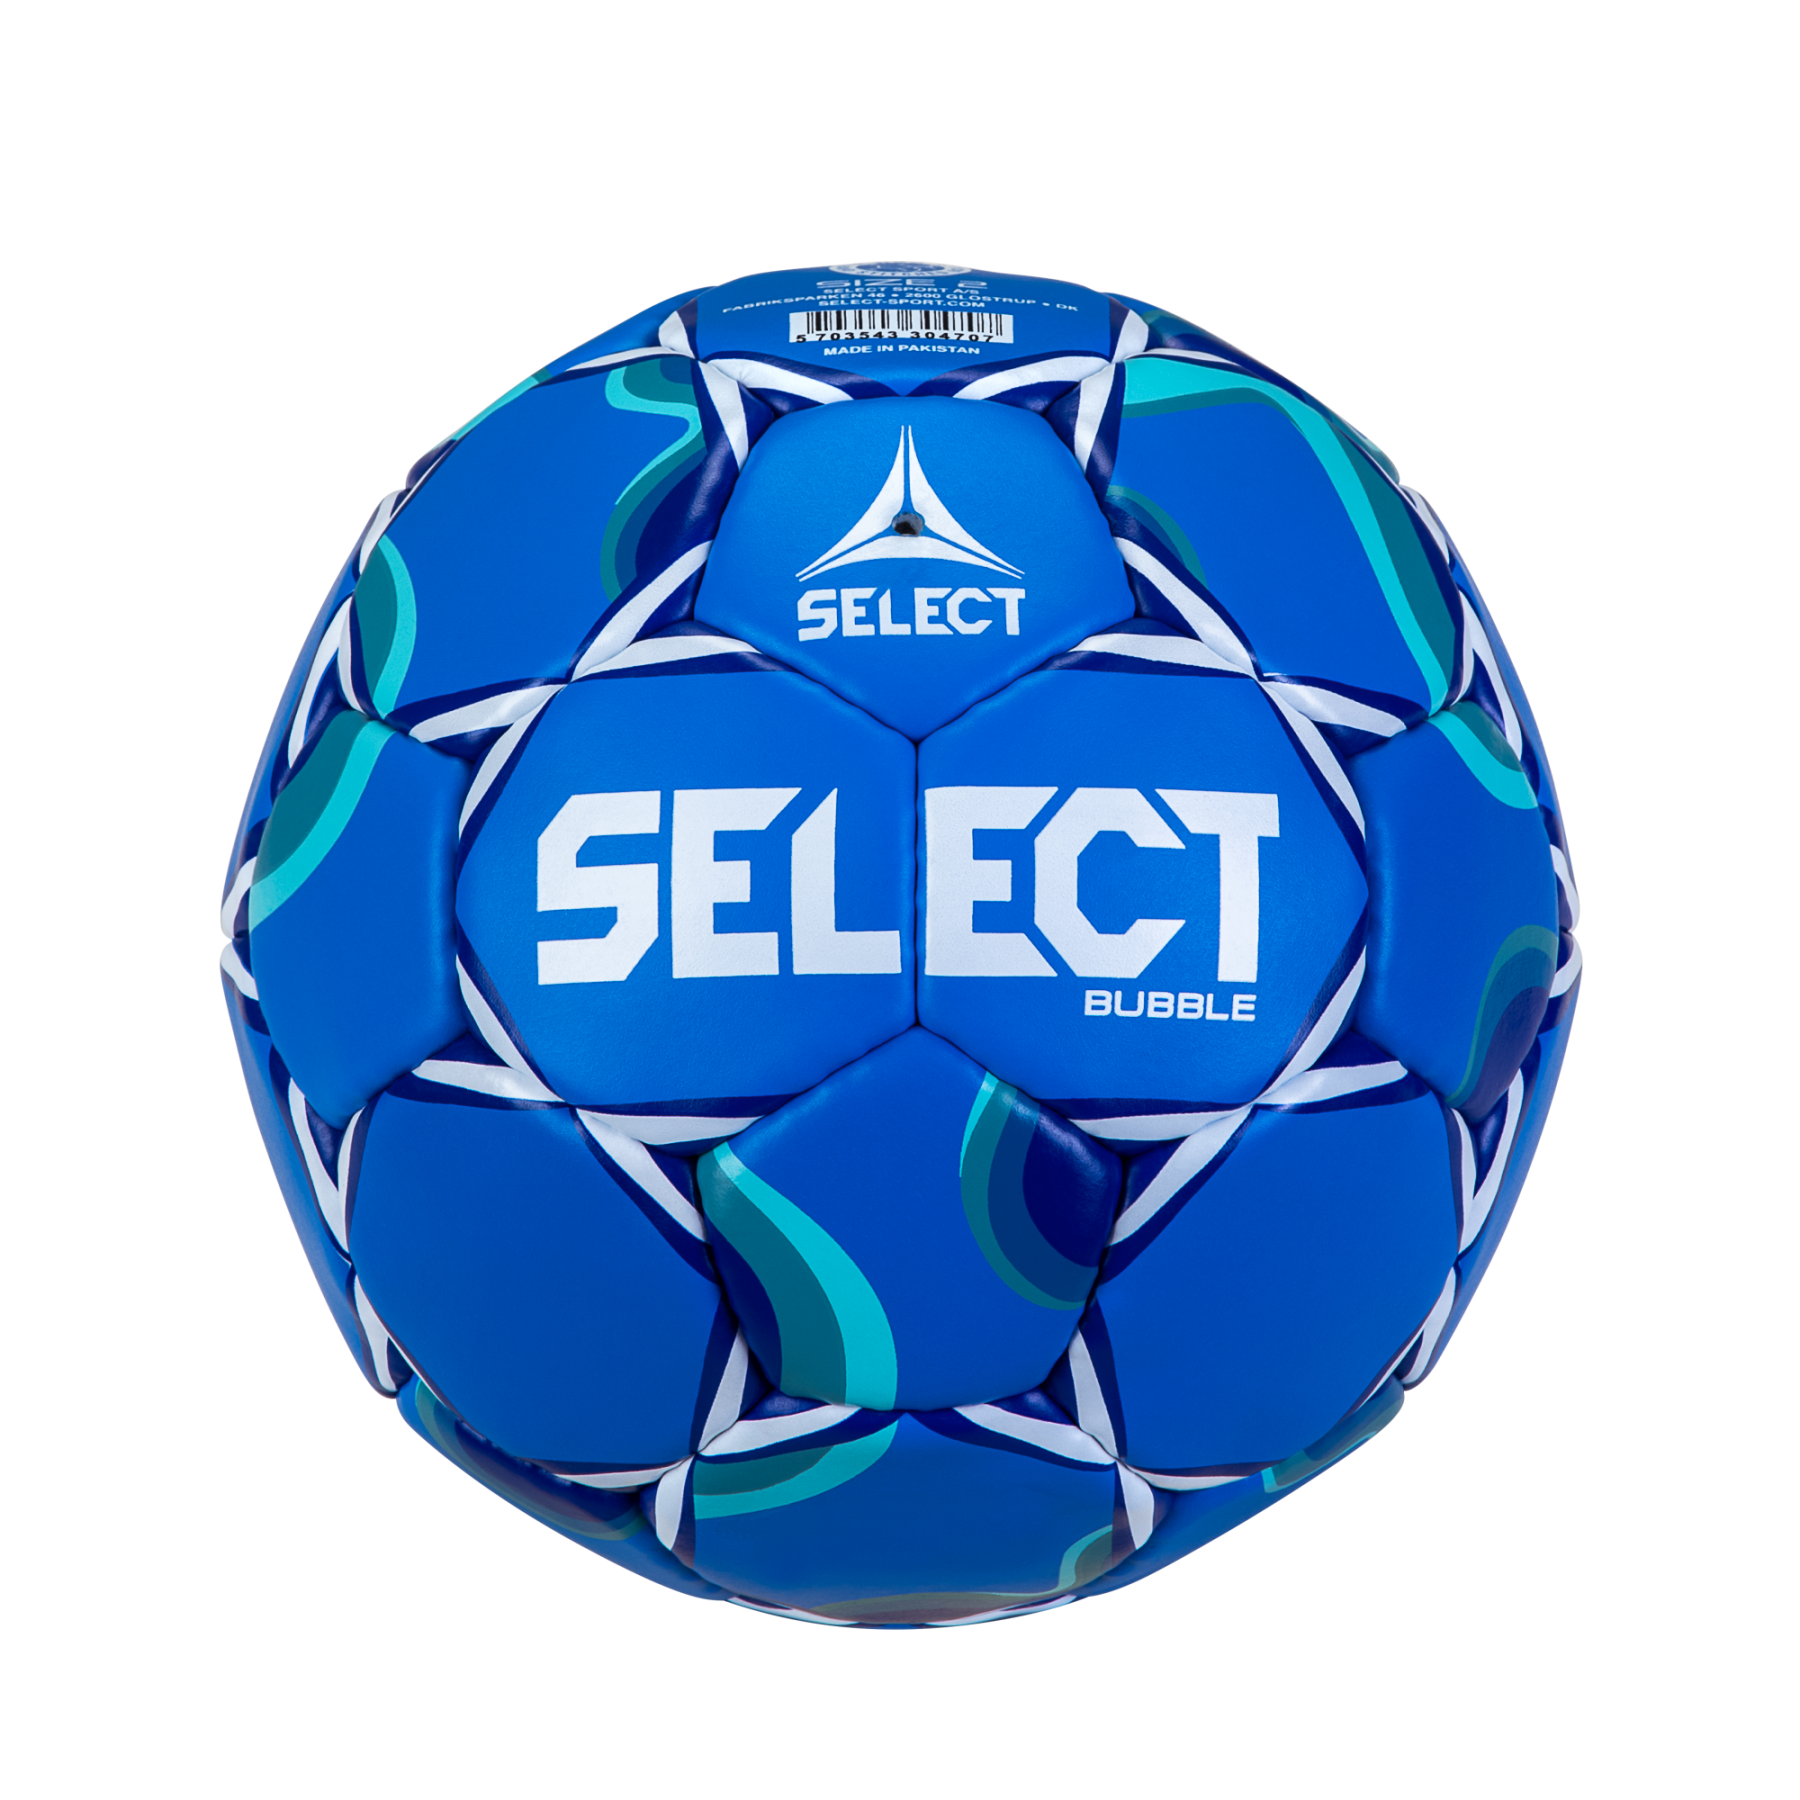 Handball Select Bubble